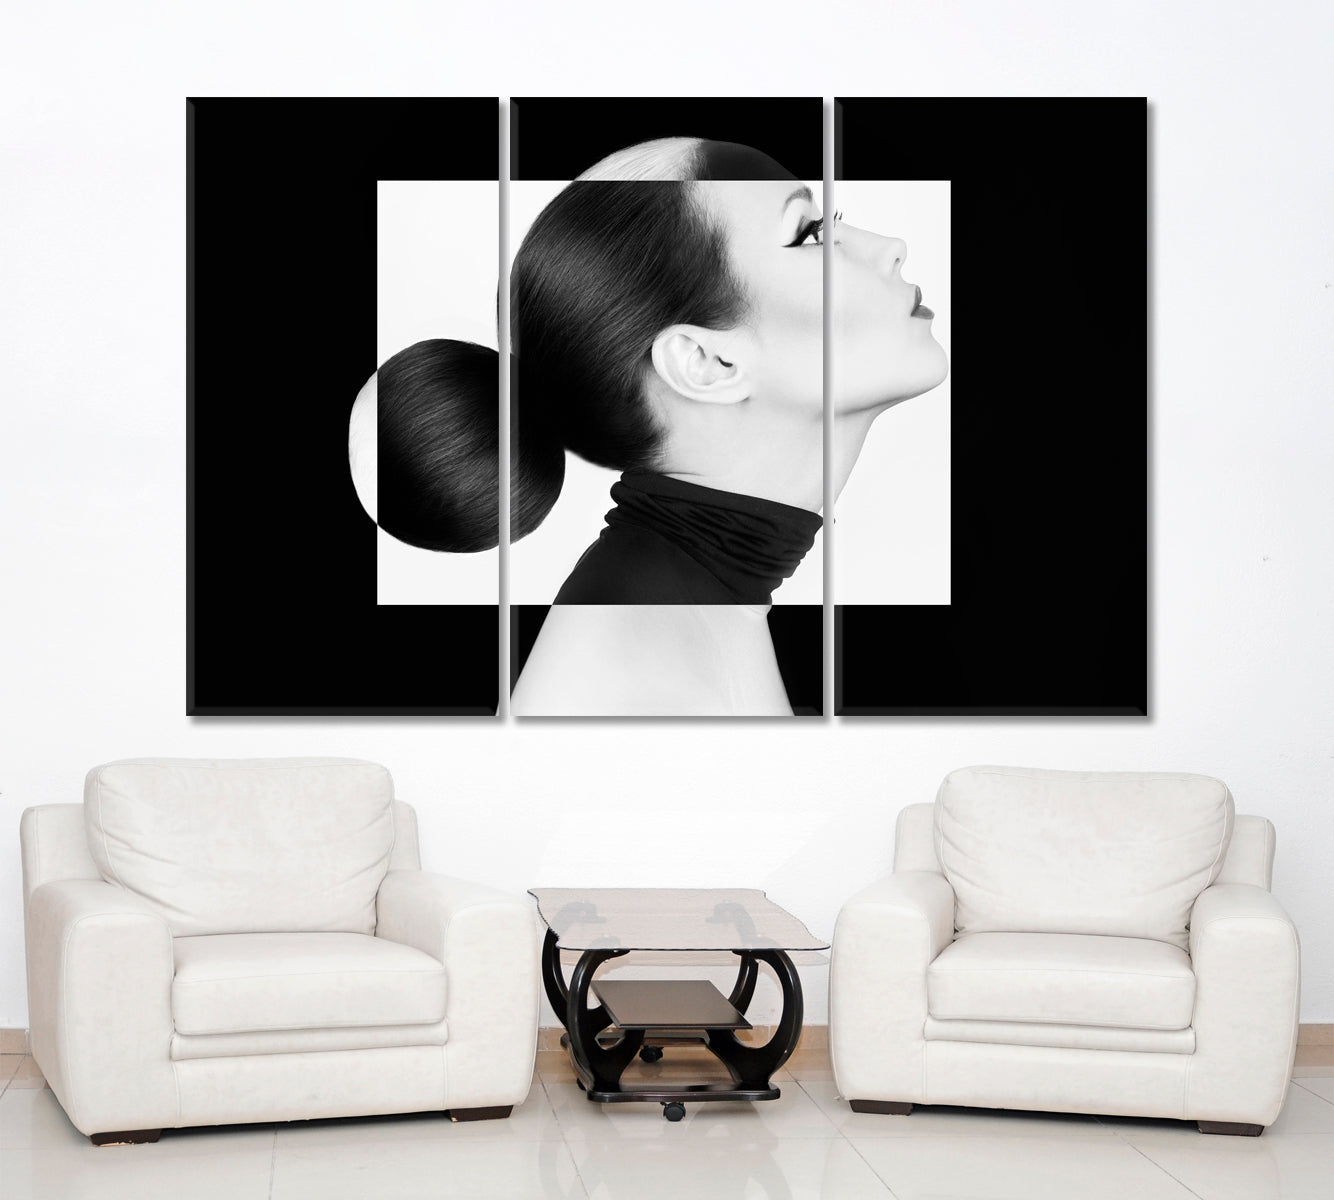 YIN YANG Black White Style Woman Fashion Portrait Black and White Wall Art Print Artesty 3 panels 36" x 24" 